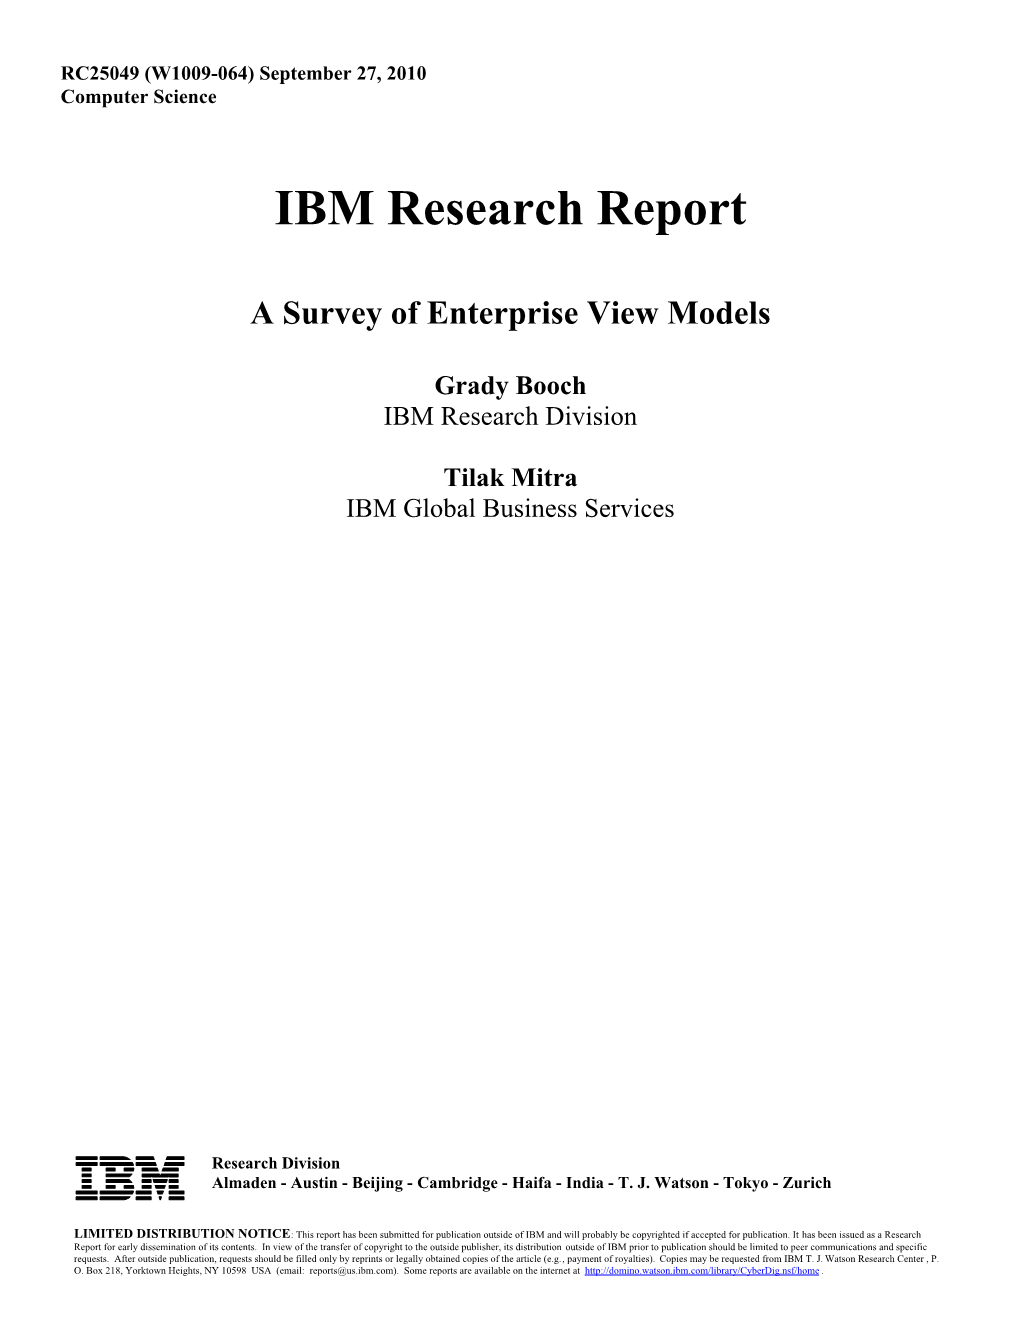 A Survey of Enterprise View Models